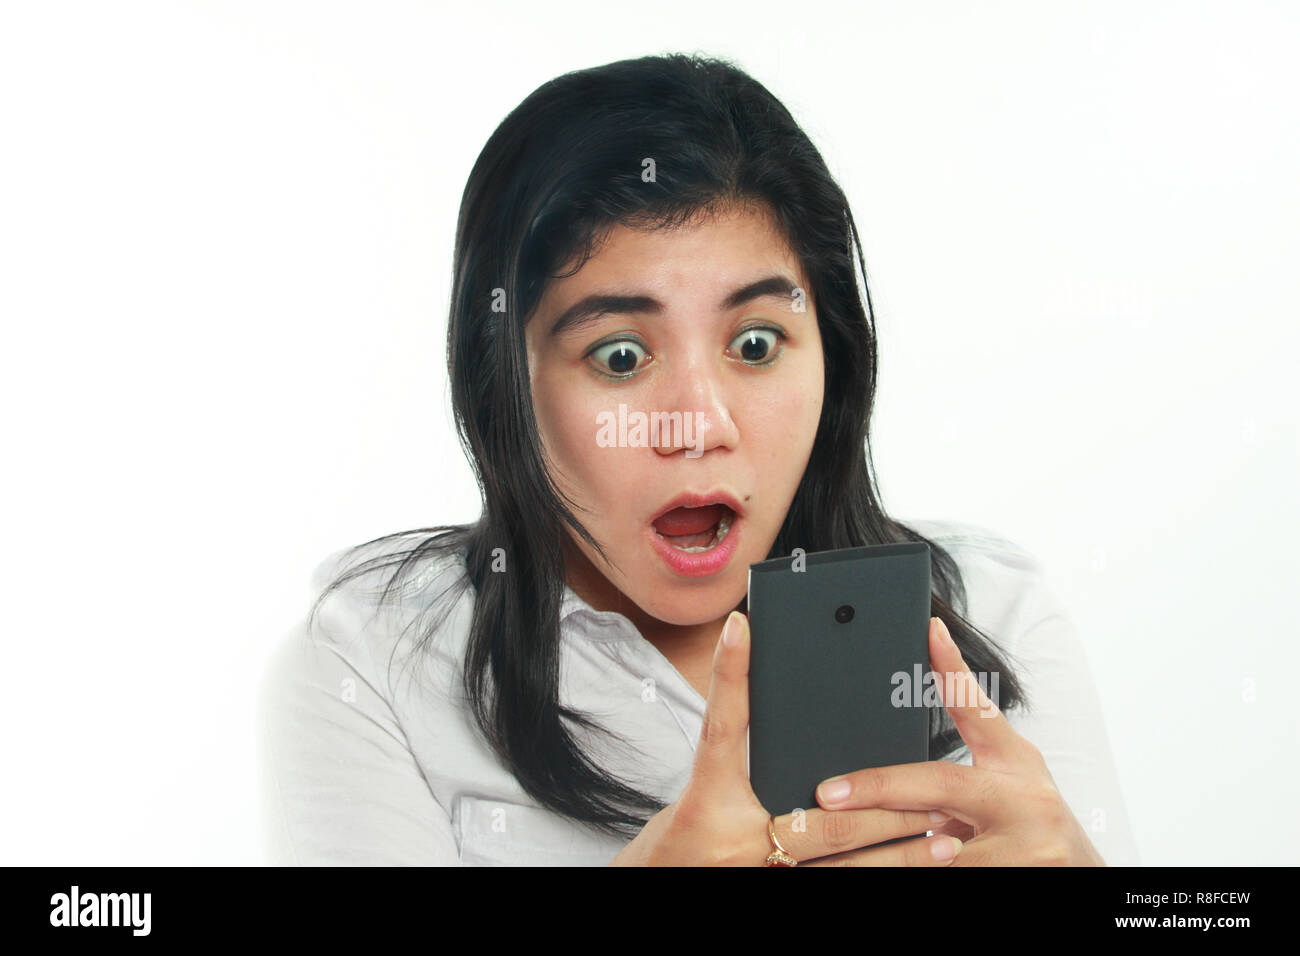 Foto Portrait von eine nette junge asiatische Frau mit Mole sah schockiert Ihr Smartphone suchen. Halten Sie das Telefon mit beiden Händen beim Lesen der Nachricht Stockfoto